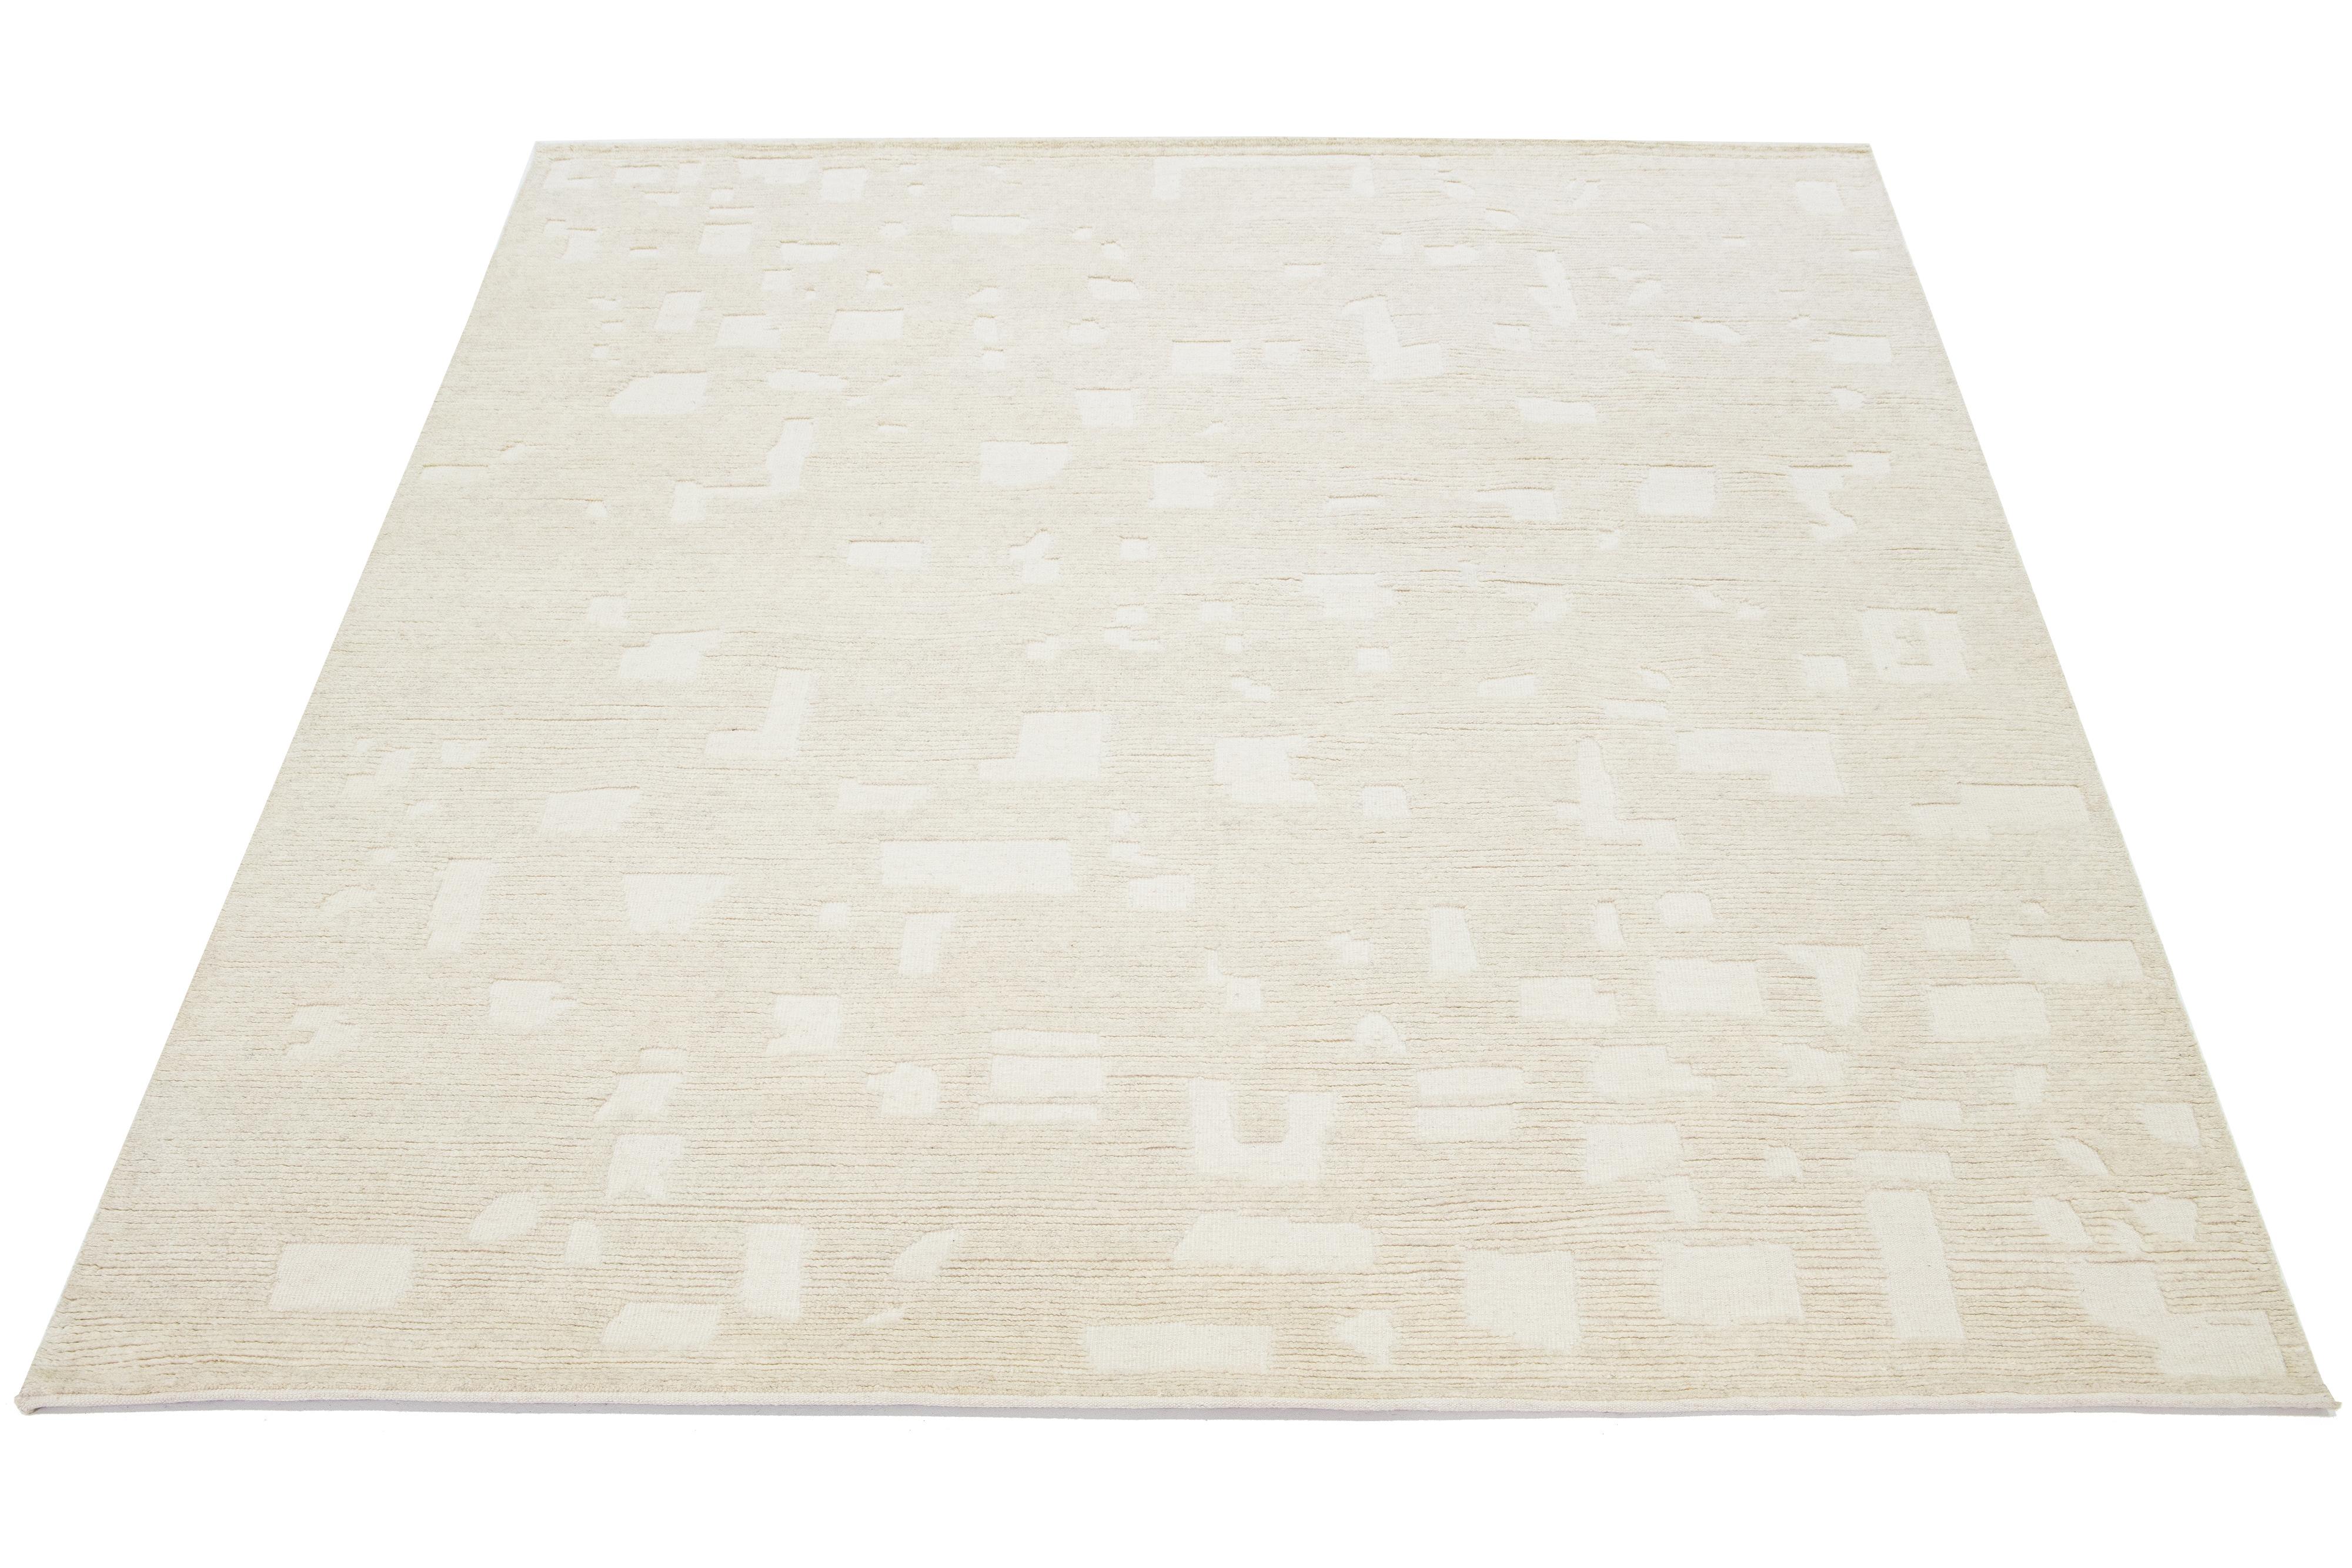 Présentant un design contemporain sur un fond ivoire naturel, ce tapis en laine de style marocain noué à la main met magnifiquement en valeur une esthétique minimaliste envoûtante.

Ce tapis mesure 8'1